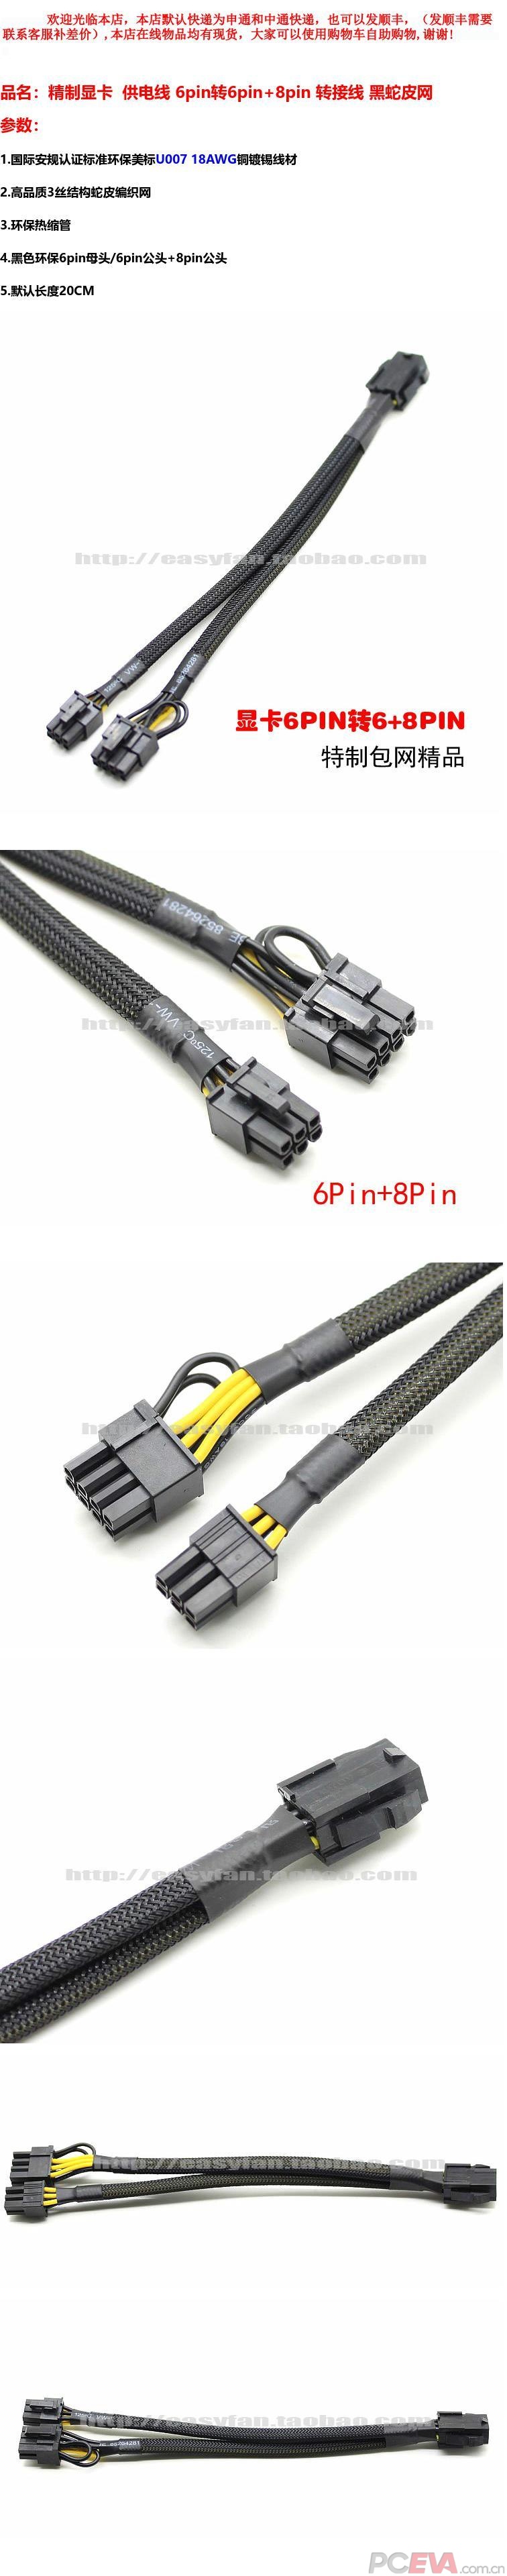 高品质显卡 供电线 6pin转6pin+8pin 转接线蛇皮网.jpg